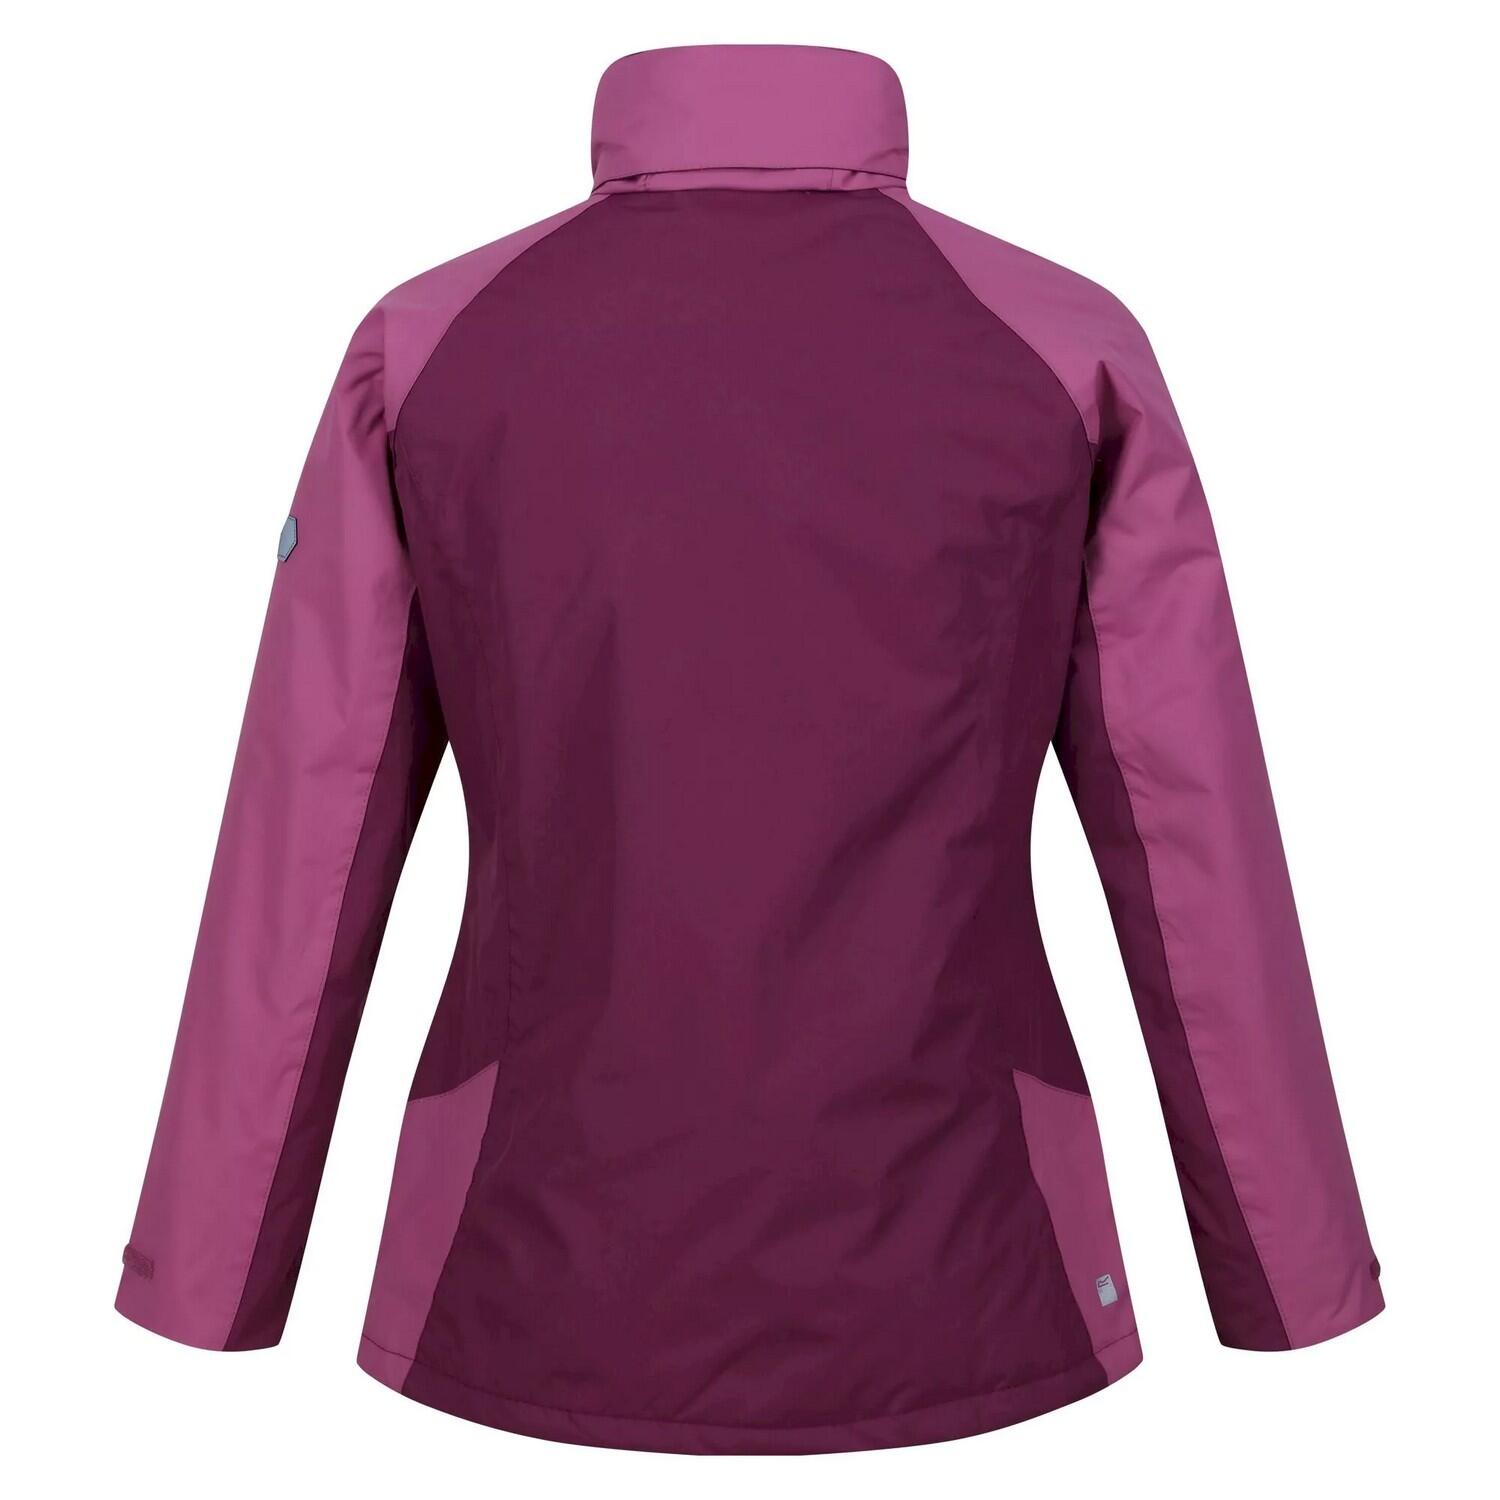 Womens/Ladies Calderdale Winter Waterproof Jacket (Amaranth Haze/Violet) 2/5